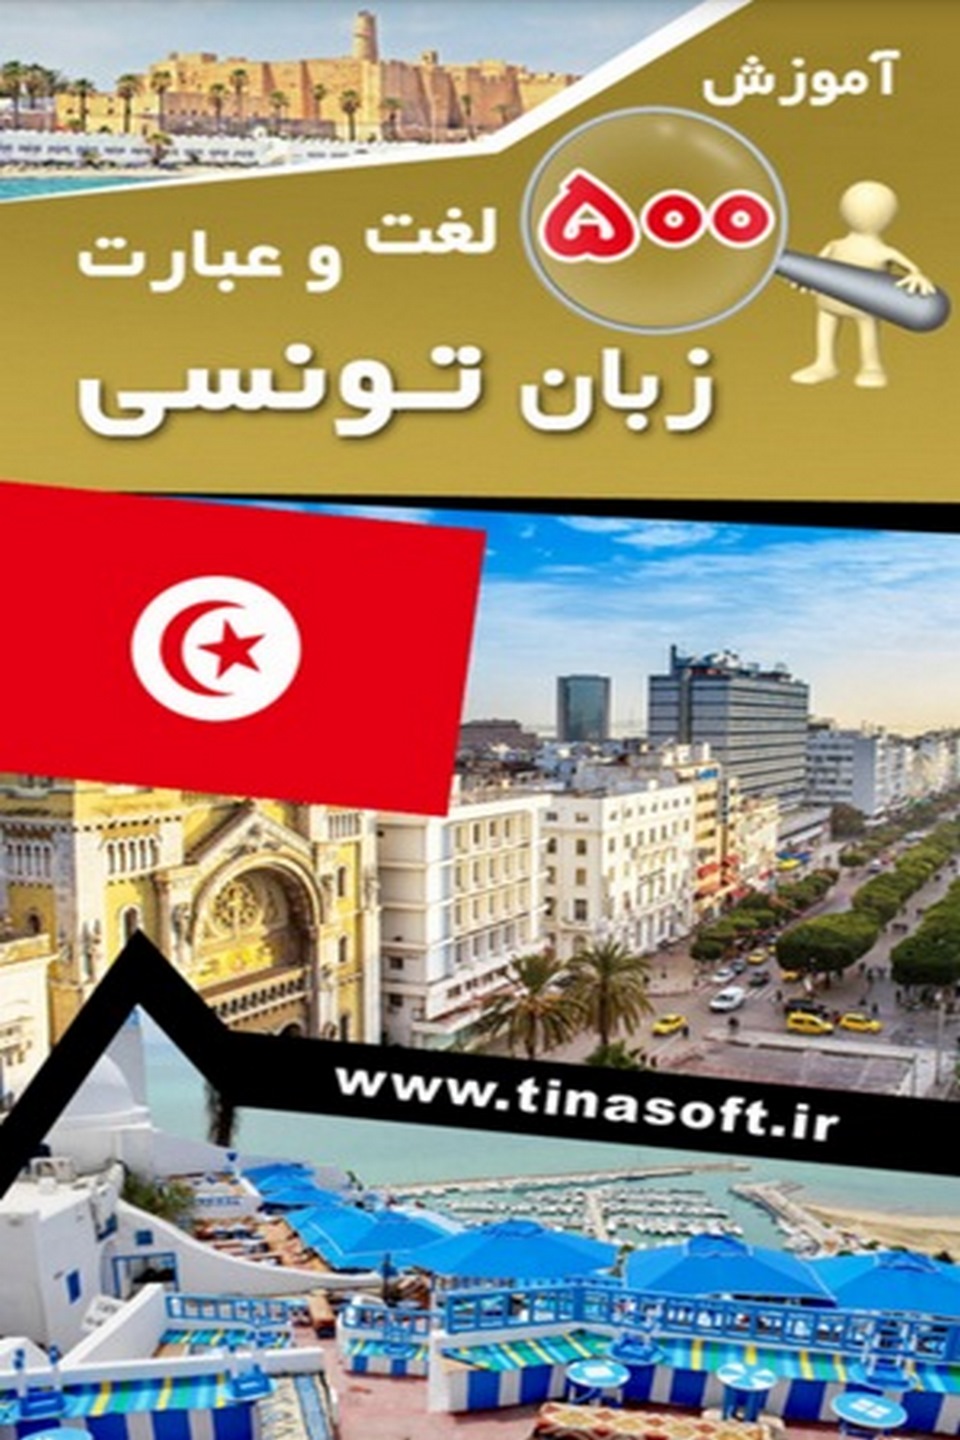 آموزش ۵۰۰ لغت و عبارت زبان تونسی